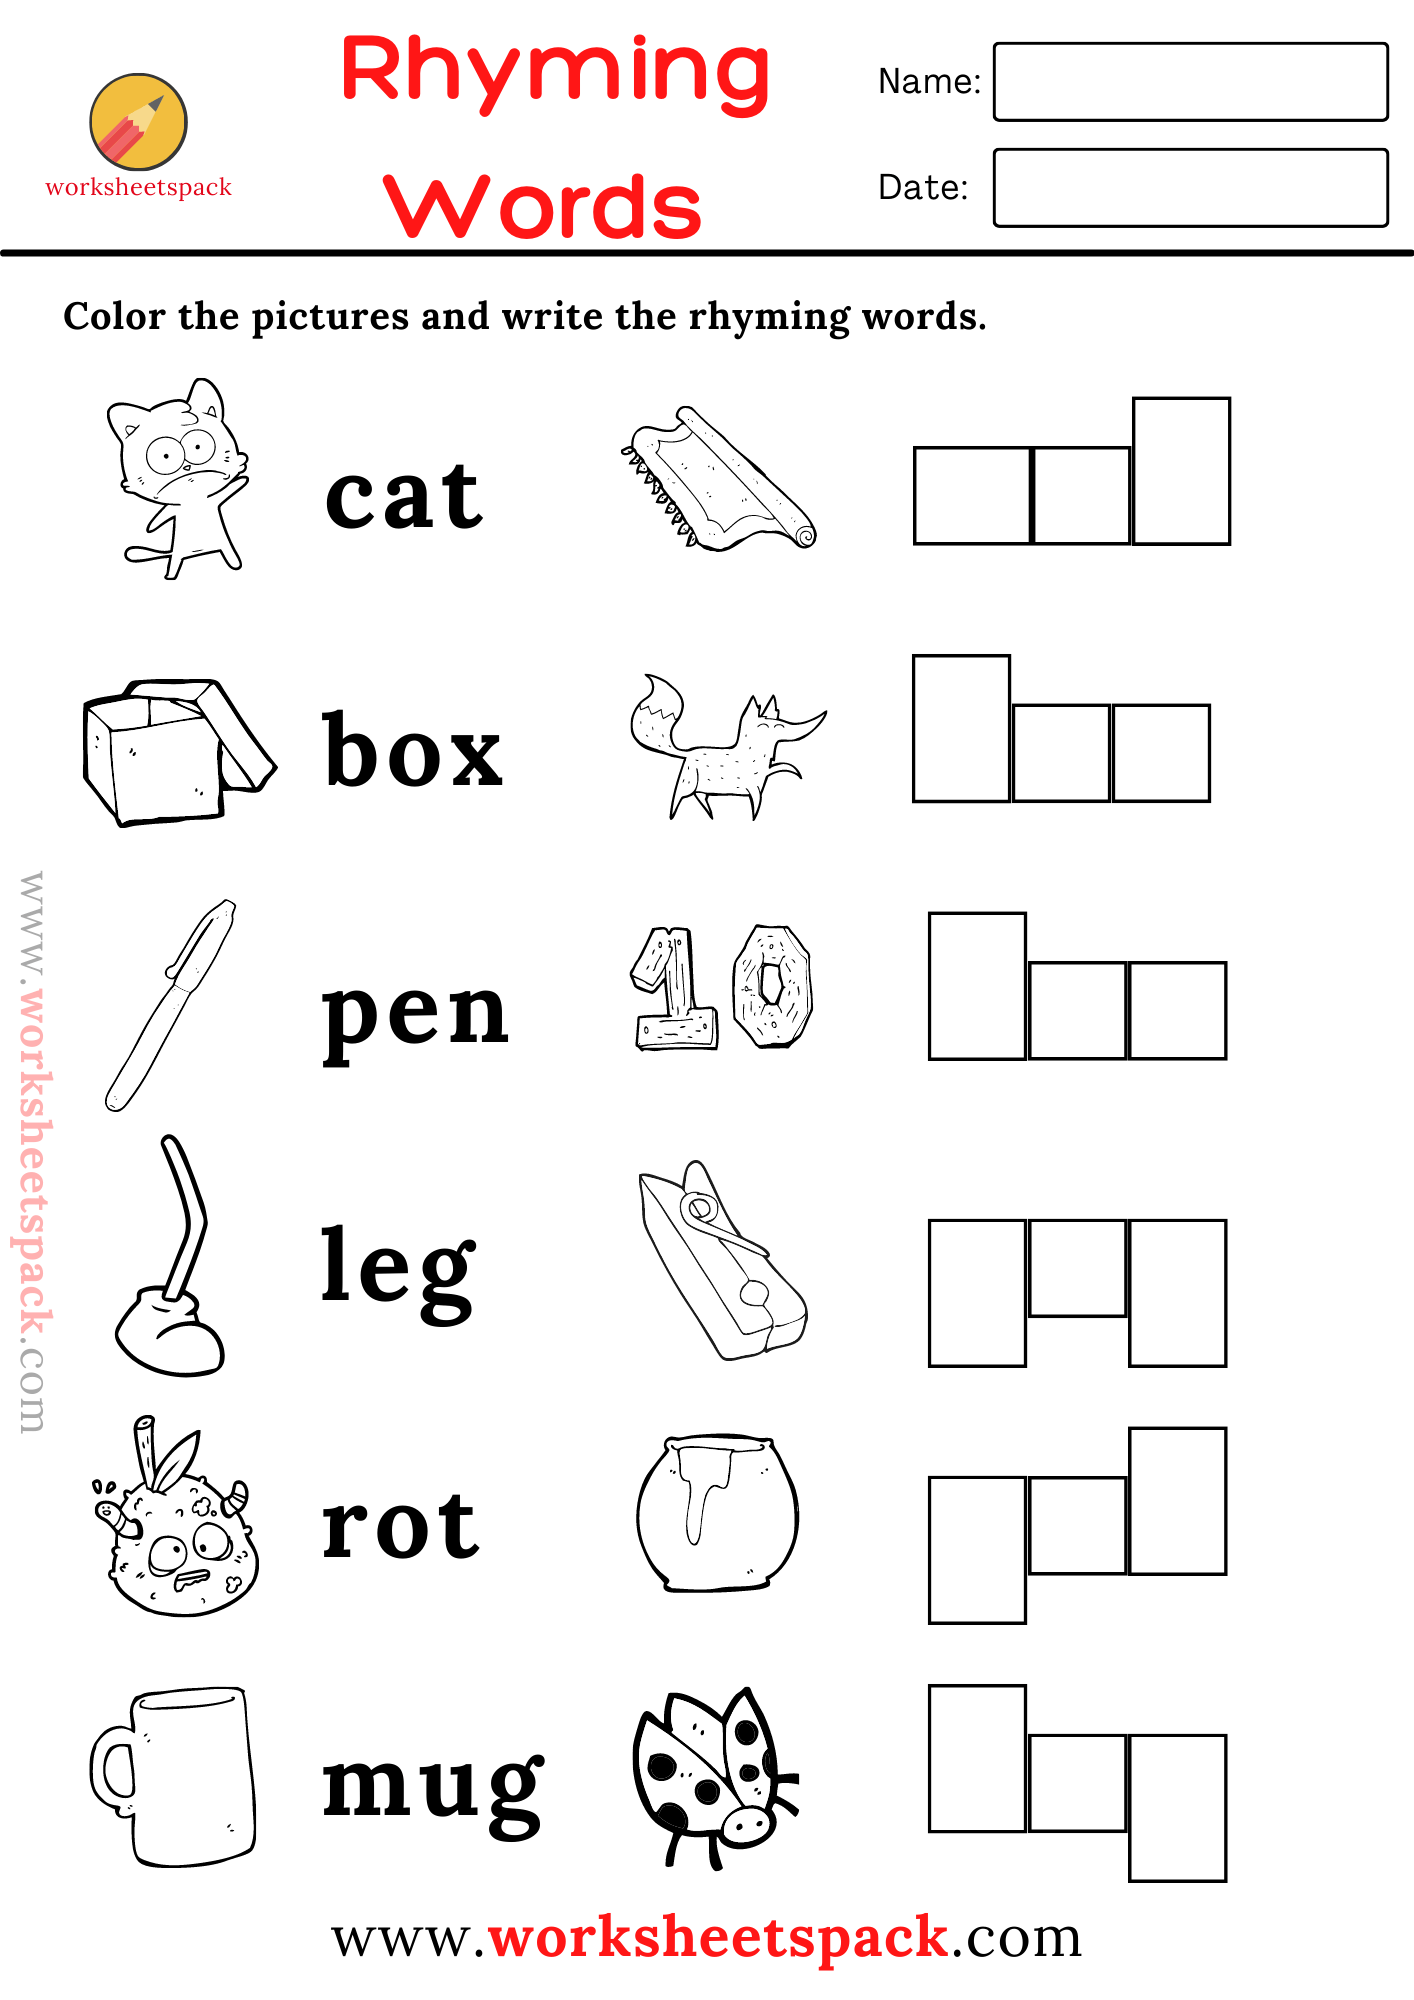 16 Free Rhyming Words Worksheets PDF for Kids - worksheetspack